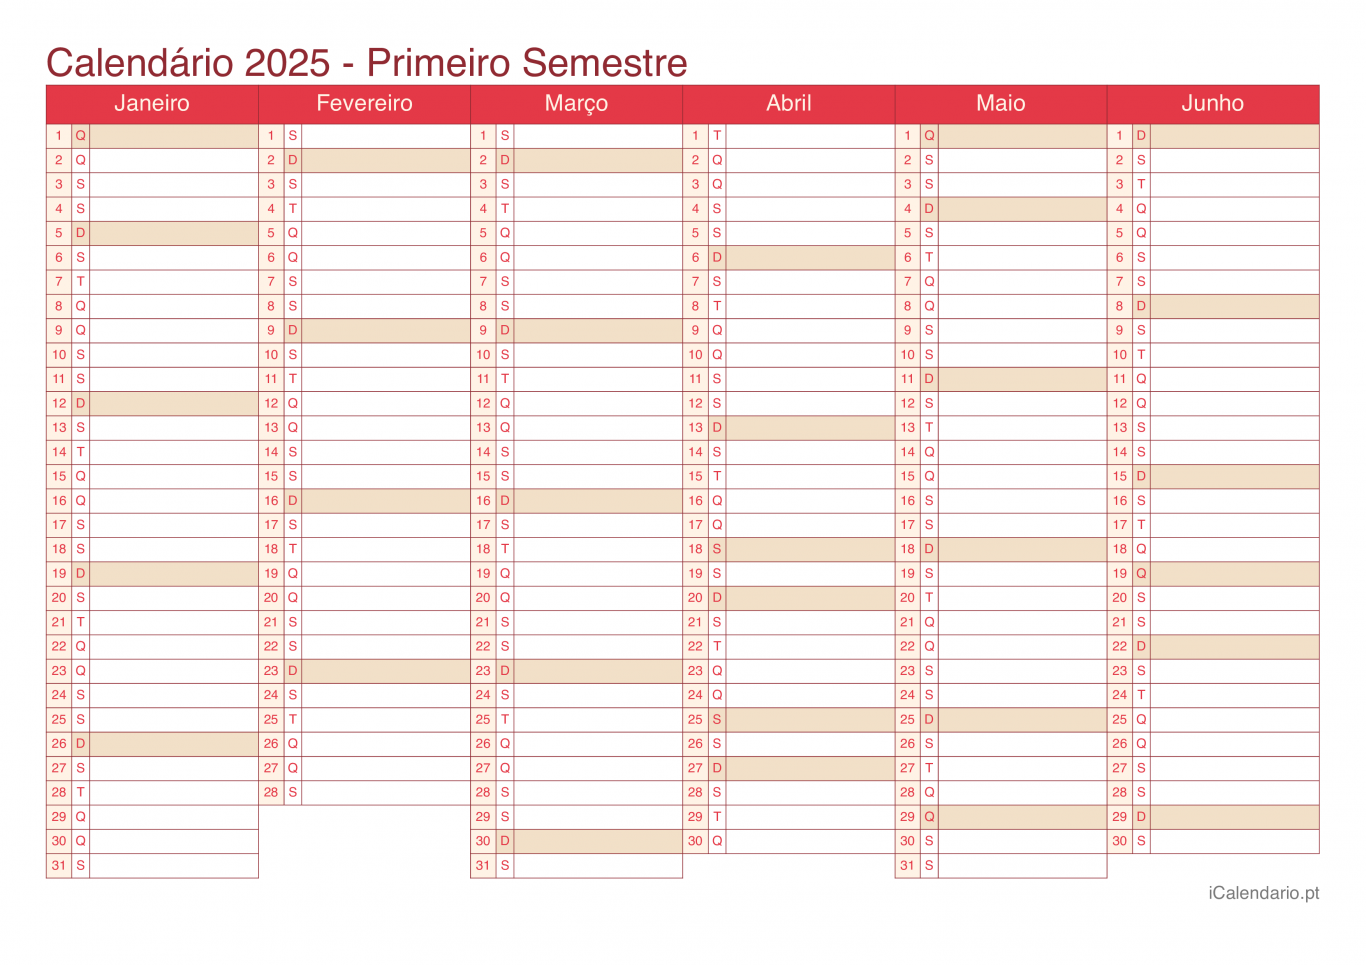 Calendário por semestre 2025 - Cherry